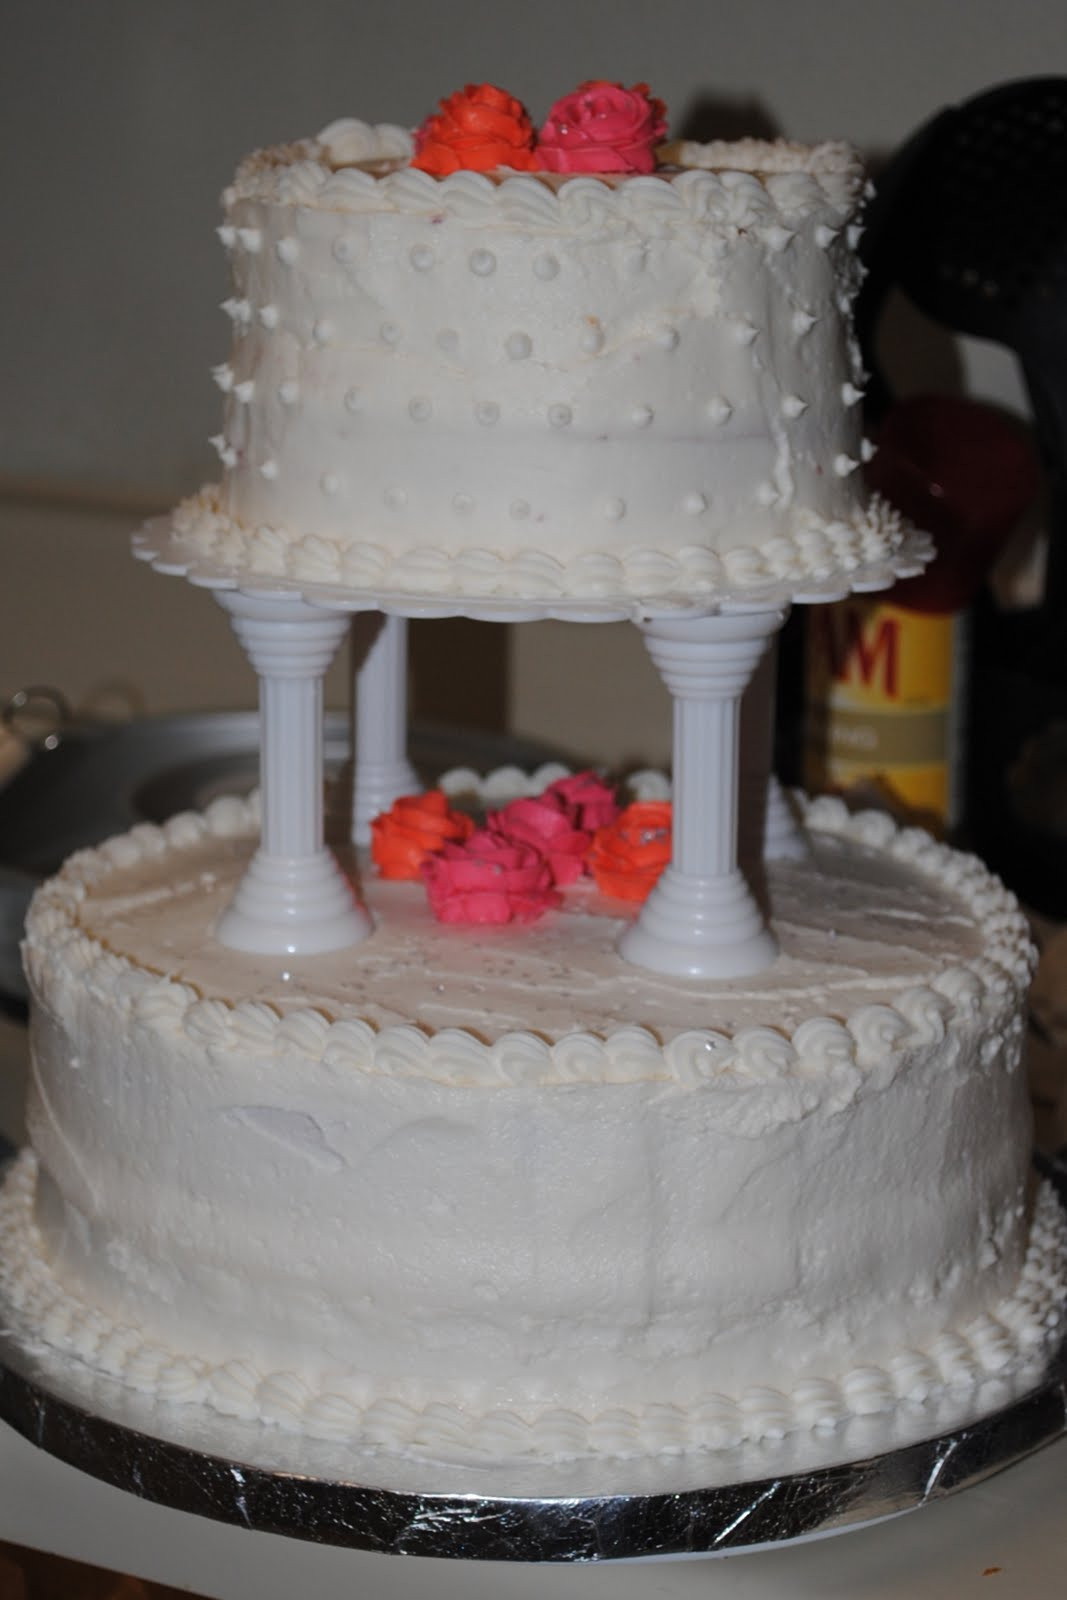 3 Tier Wedding Cakes At Walmart
 Walmart 3 tier wedding cakes idea in 2017